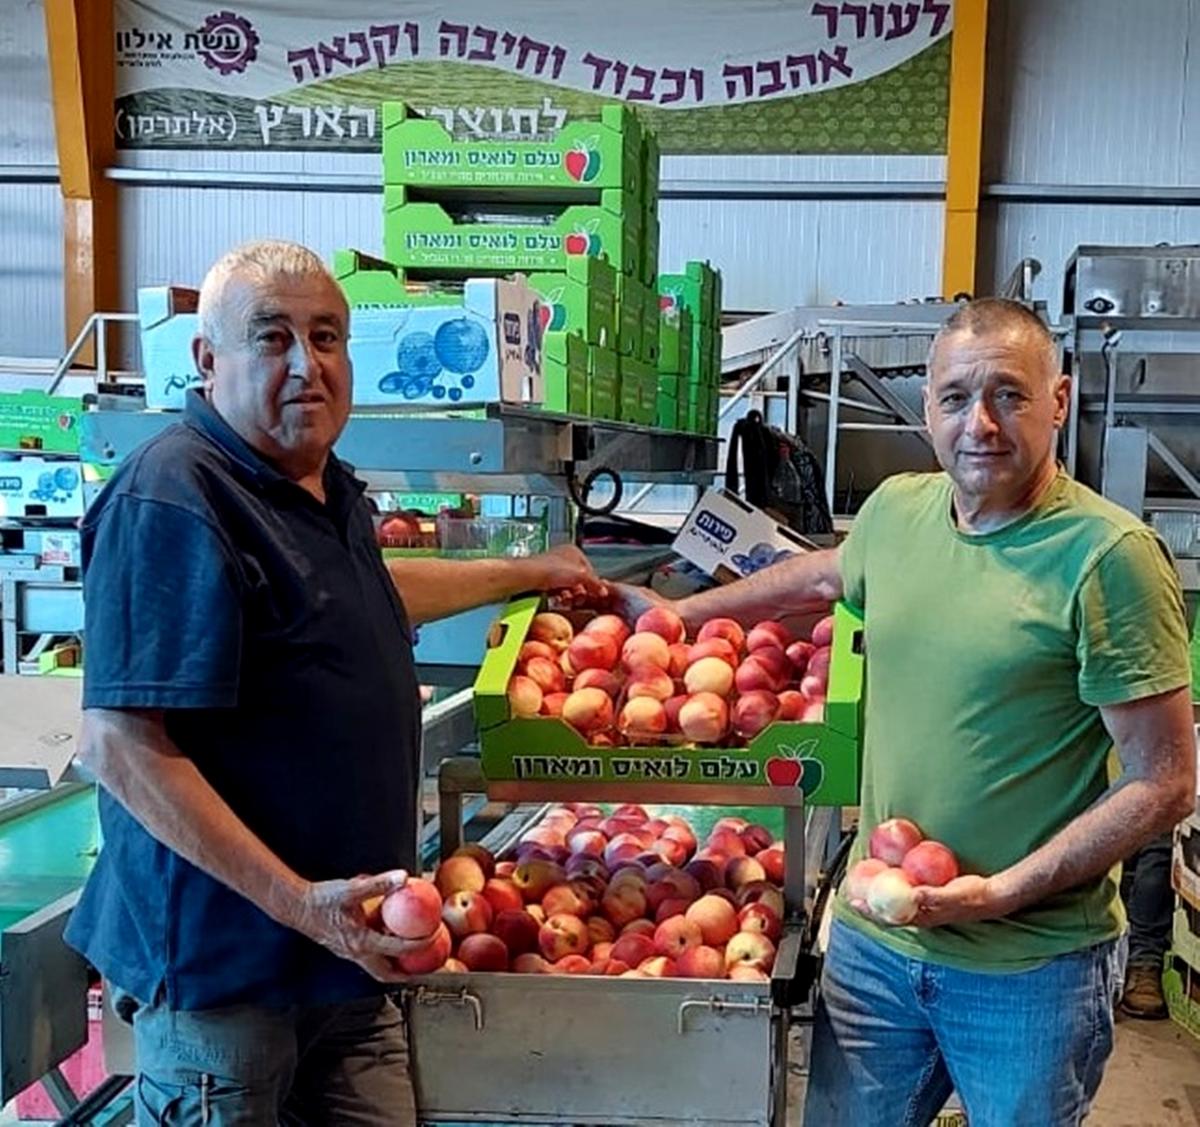 החקלאי לואיס עלם וירון בלחסן מנכ"ל ארגון מגדלי הפירות בישראל בבית האריזה בגוש חלב של משפחת החקלאים עלם